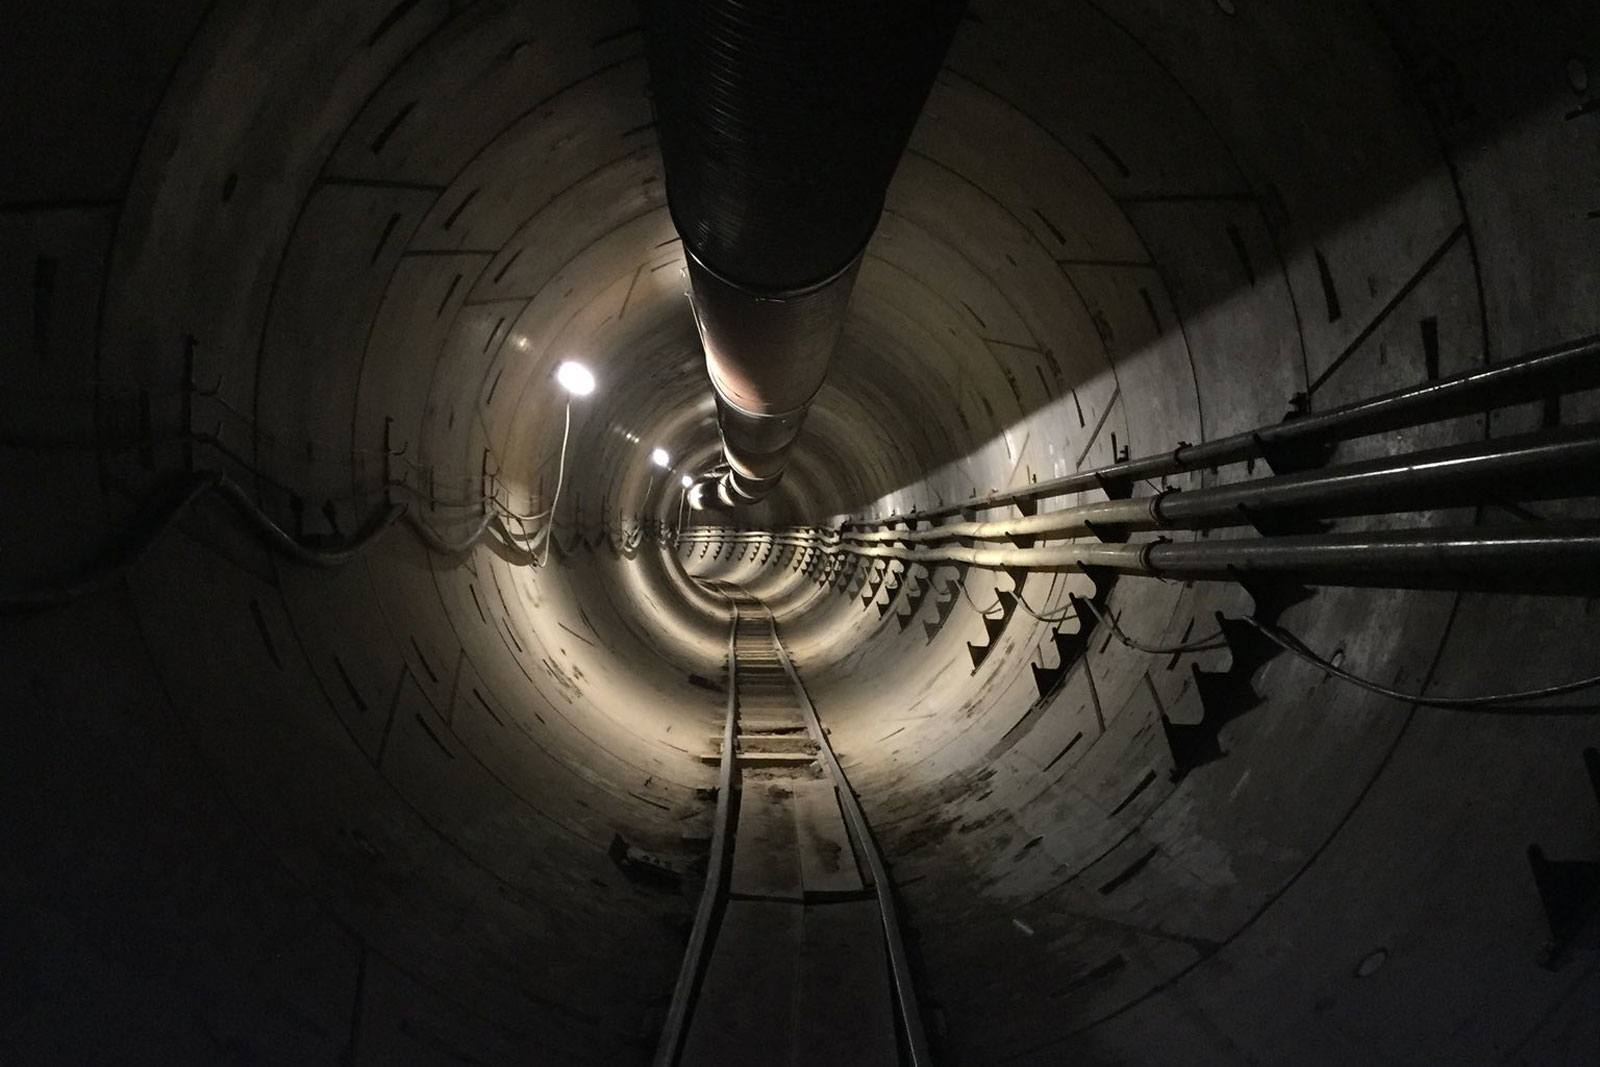 Илон Маск опубликовал в instagram снимок тоннеля под Лос-Анджелесом